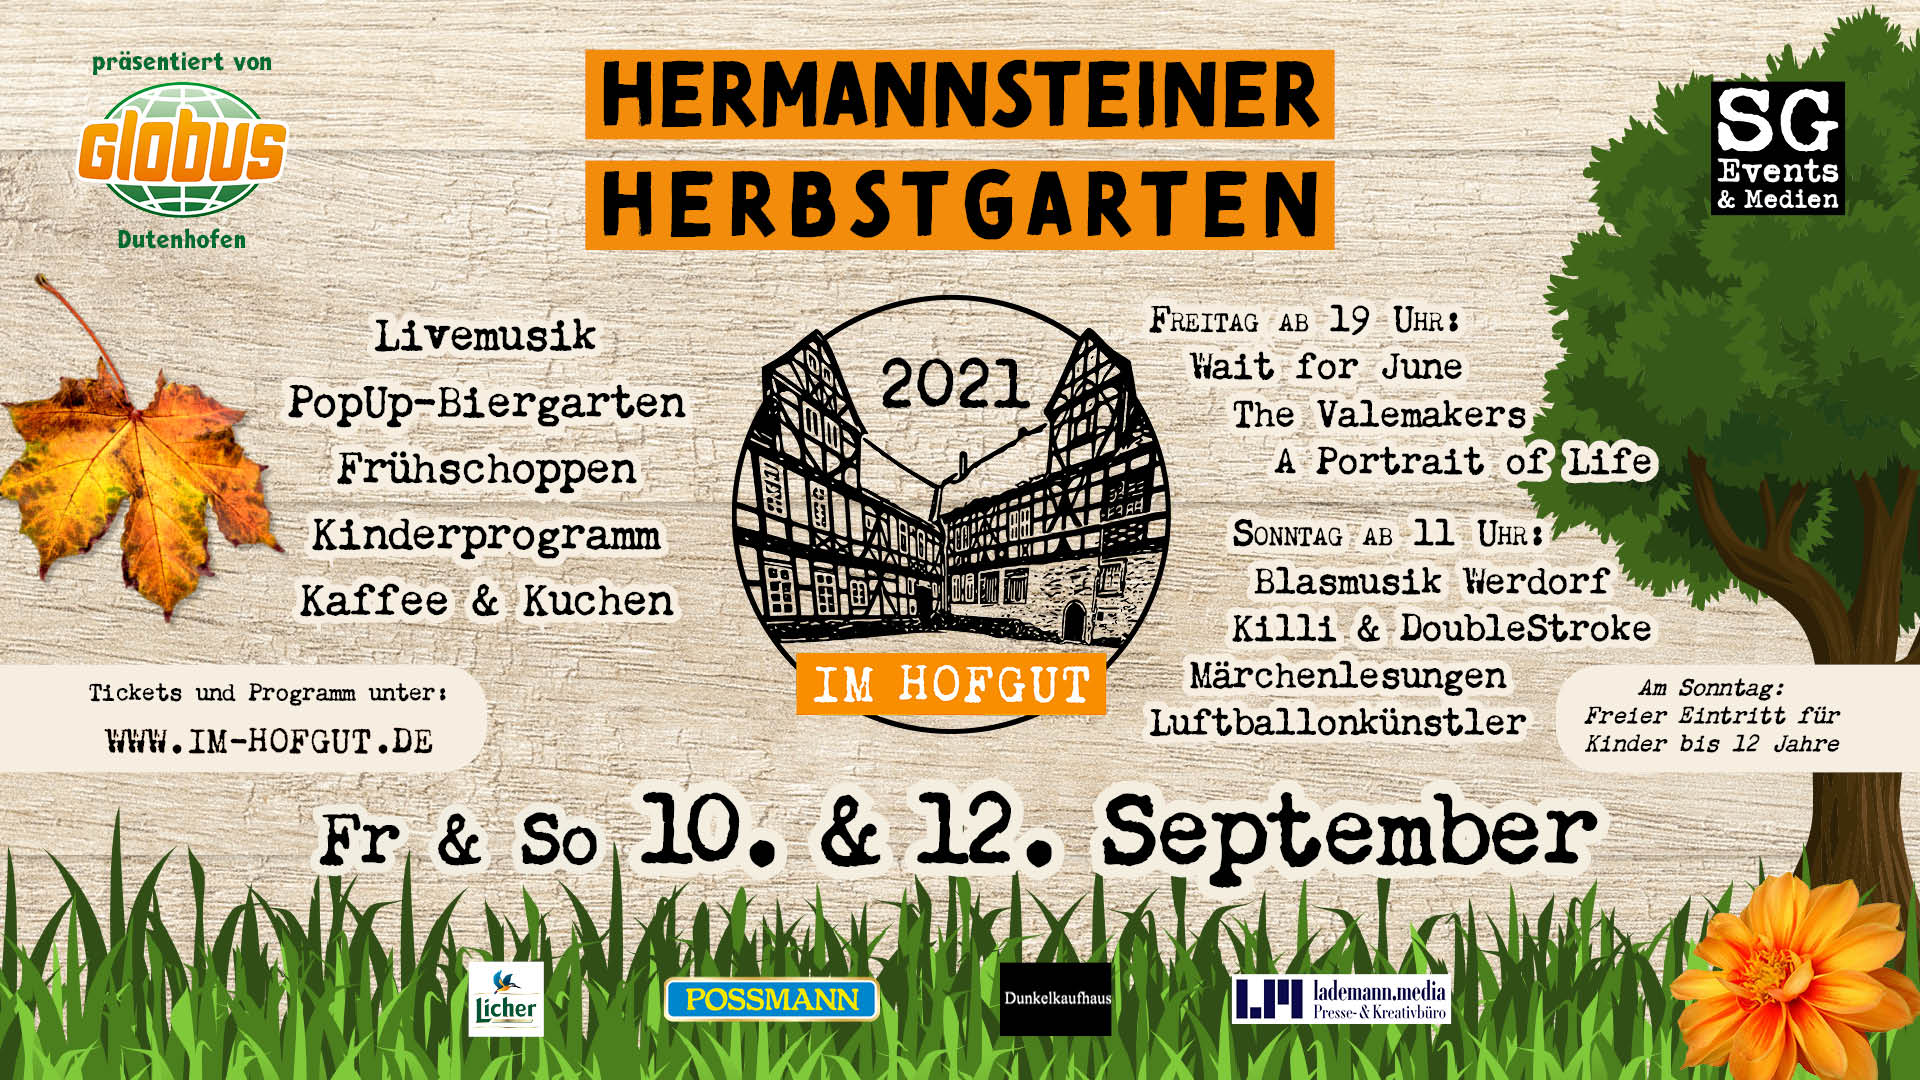 Hermannsteiner Herbstgarten 2021